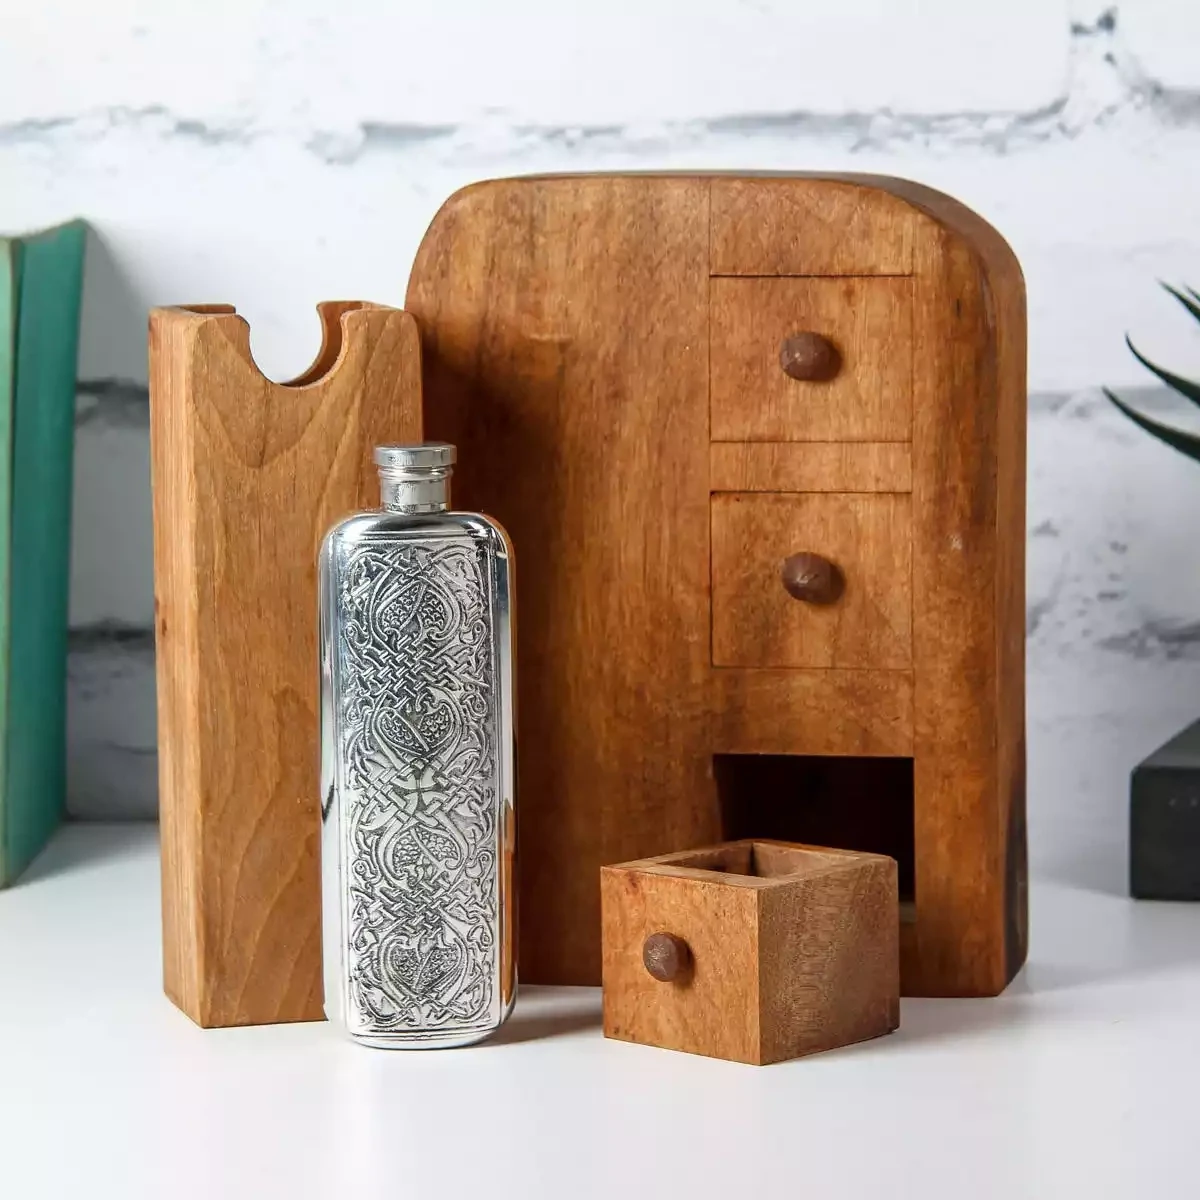 Walnut Three-Drawer Box with Secret Hip Flask by Dave McKeen